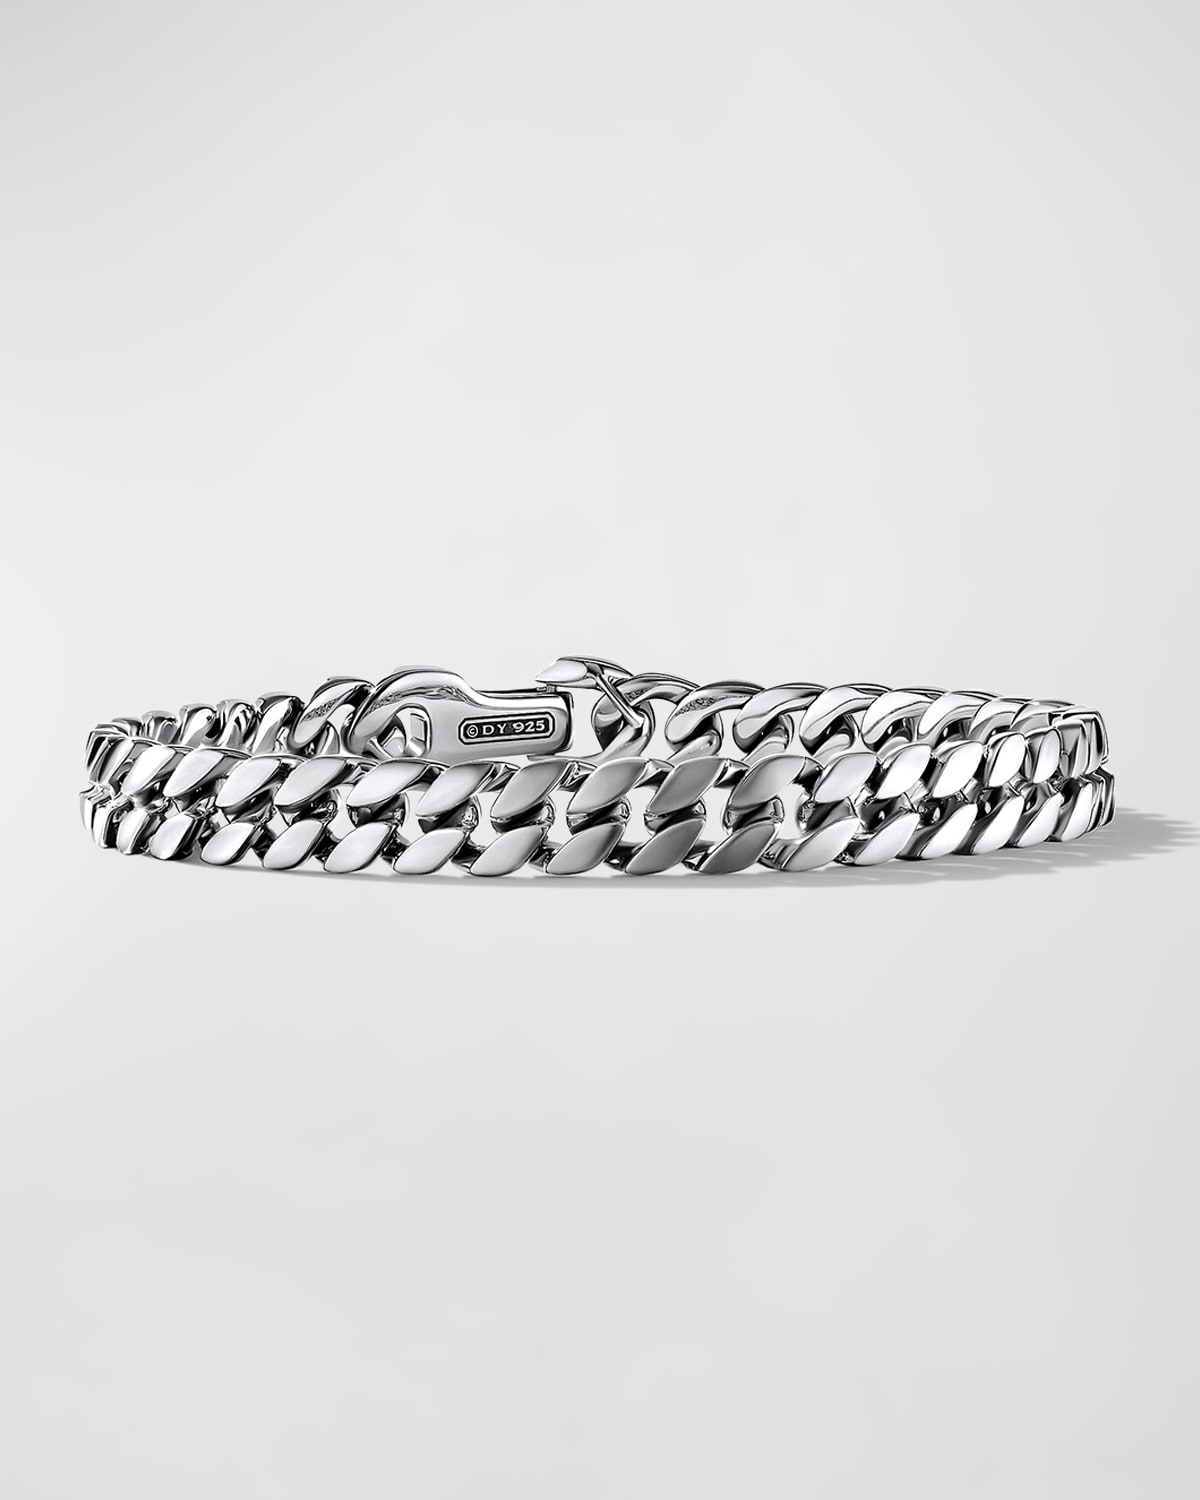 David Yurman Men's Curb Chain Bracelet In Sterling Silver, 8mm, 7.5"l